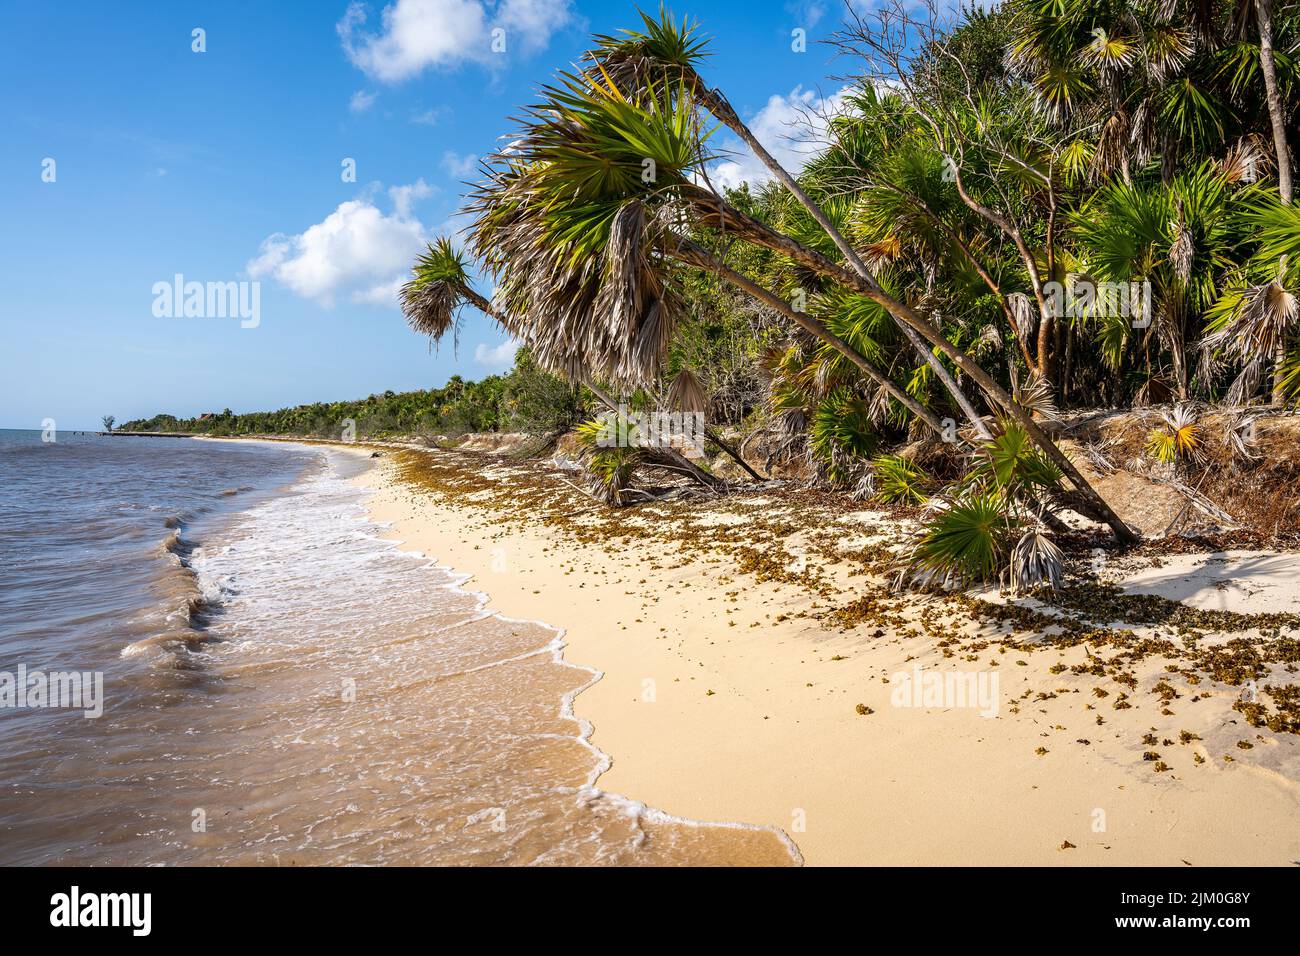 Una spiaggia soleggiata con piante verdi sullo sfondo del mare Foto Stock